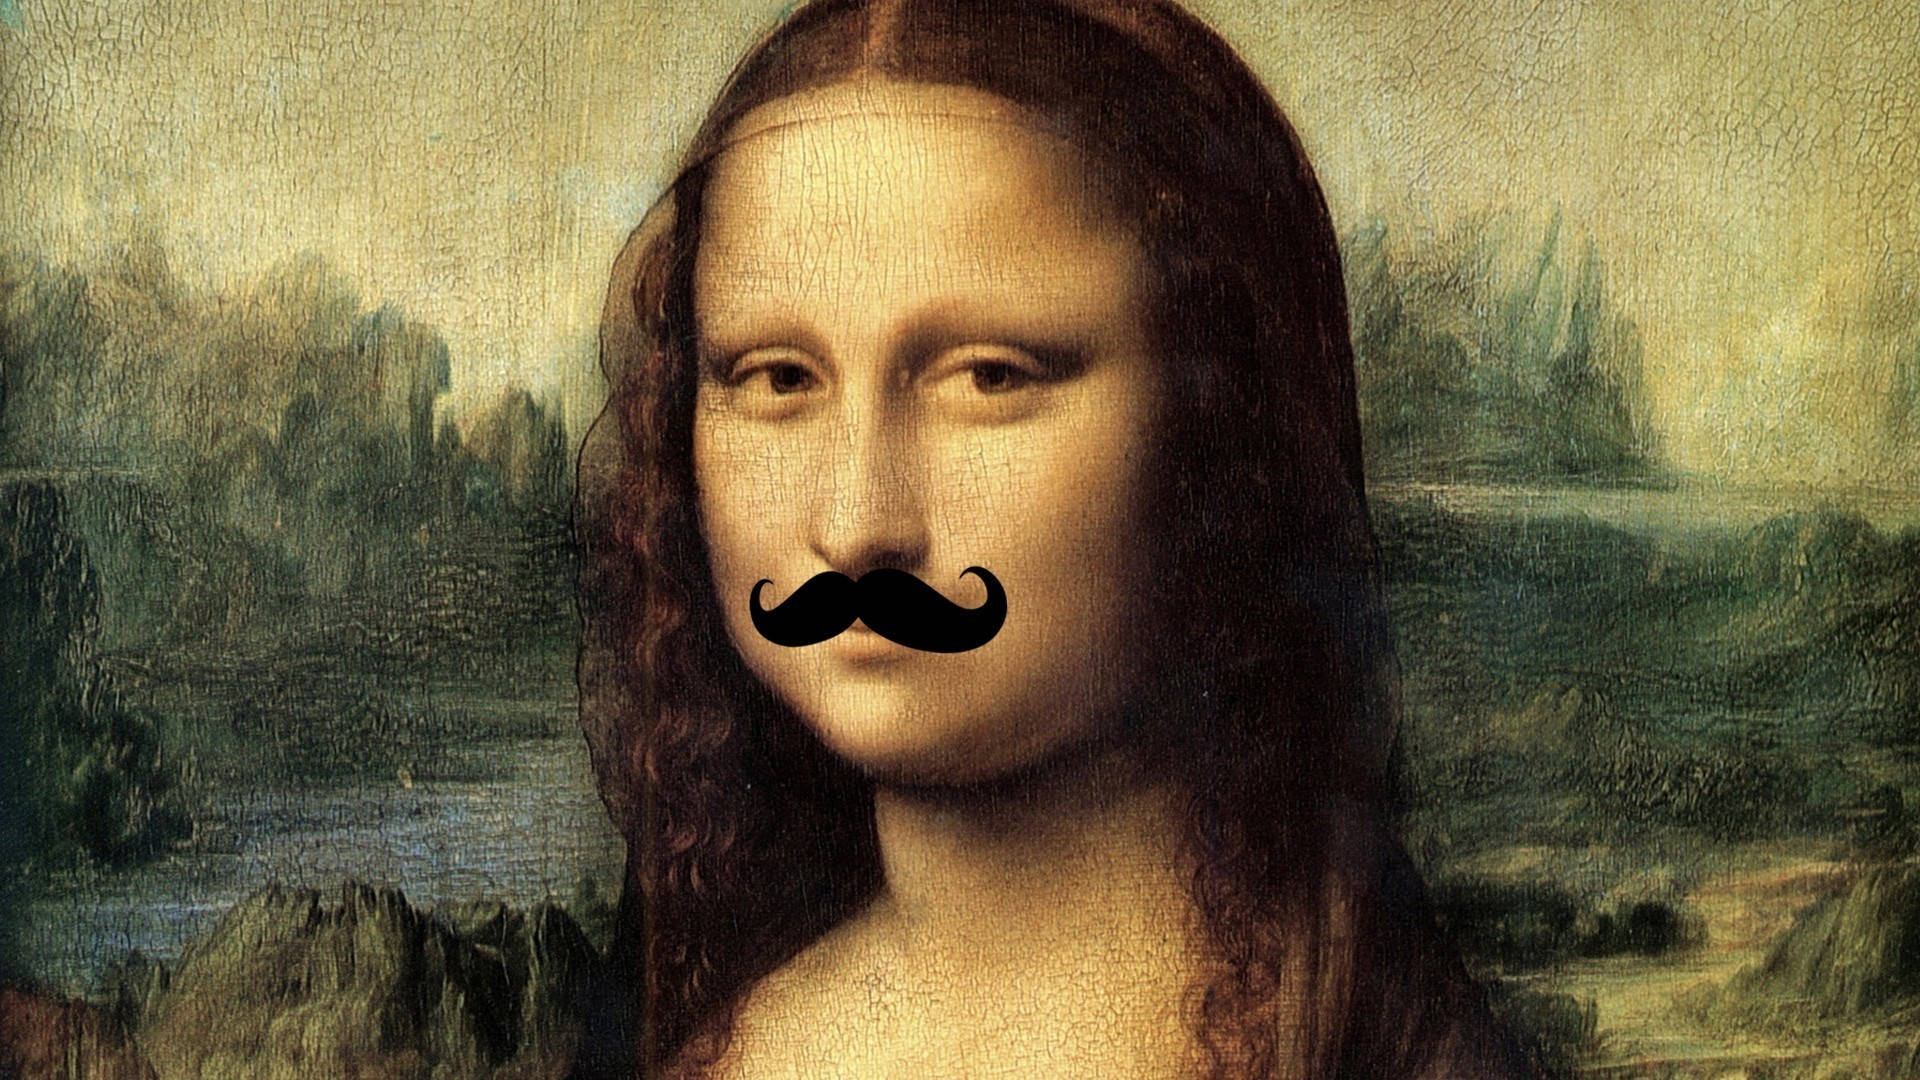 Mona Lisa With Mustache